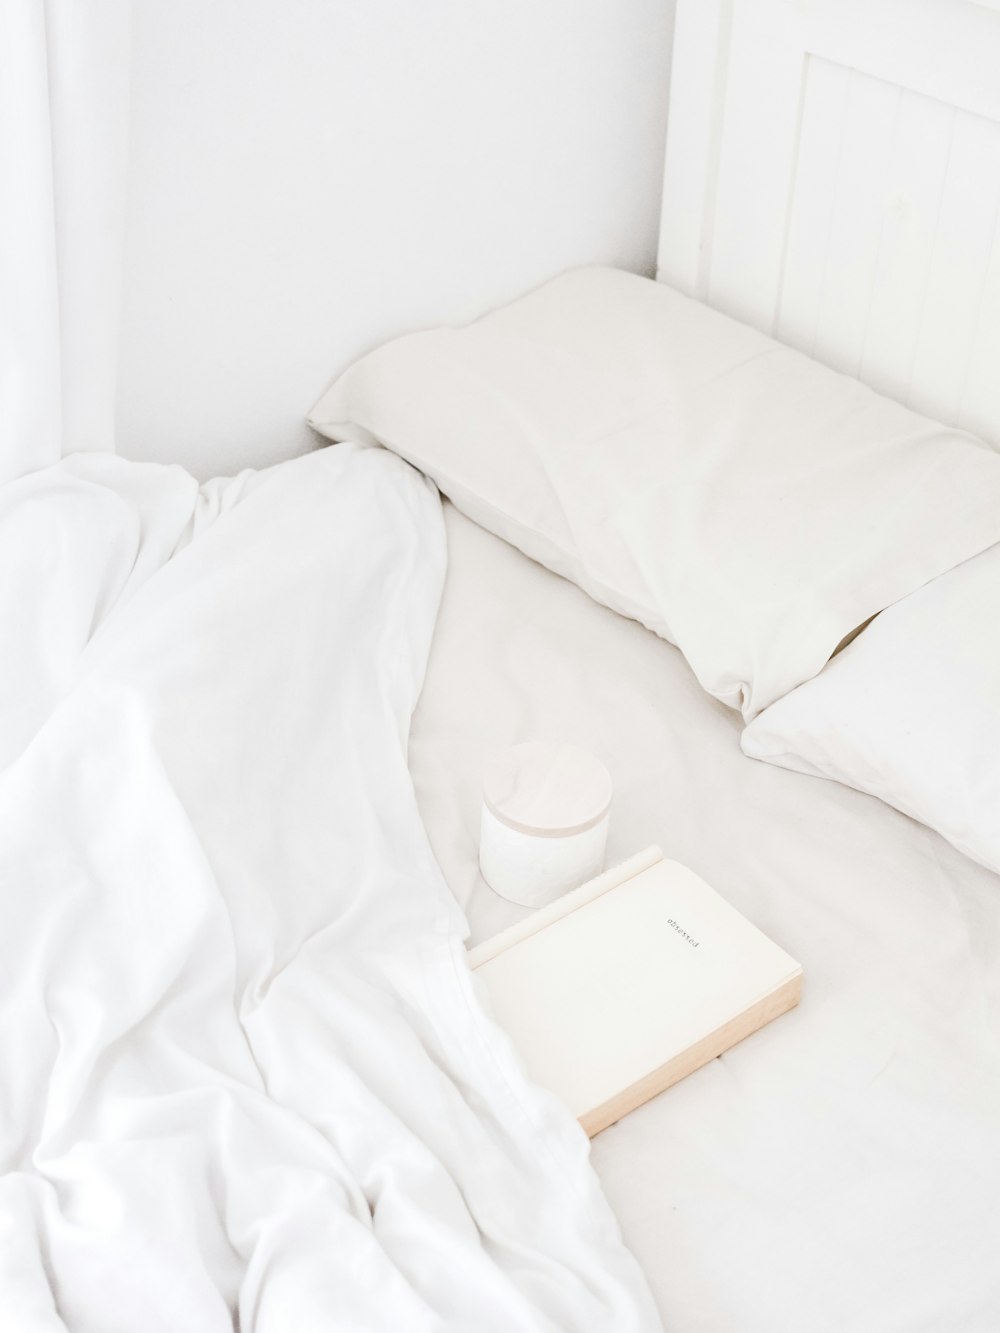 alto-falante portátil branco na cama